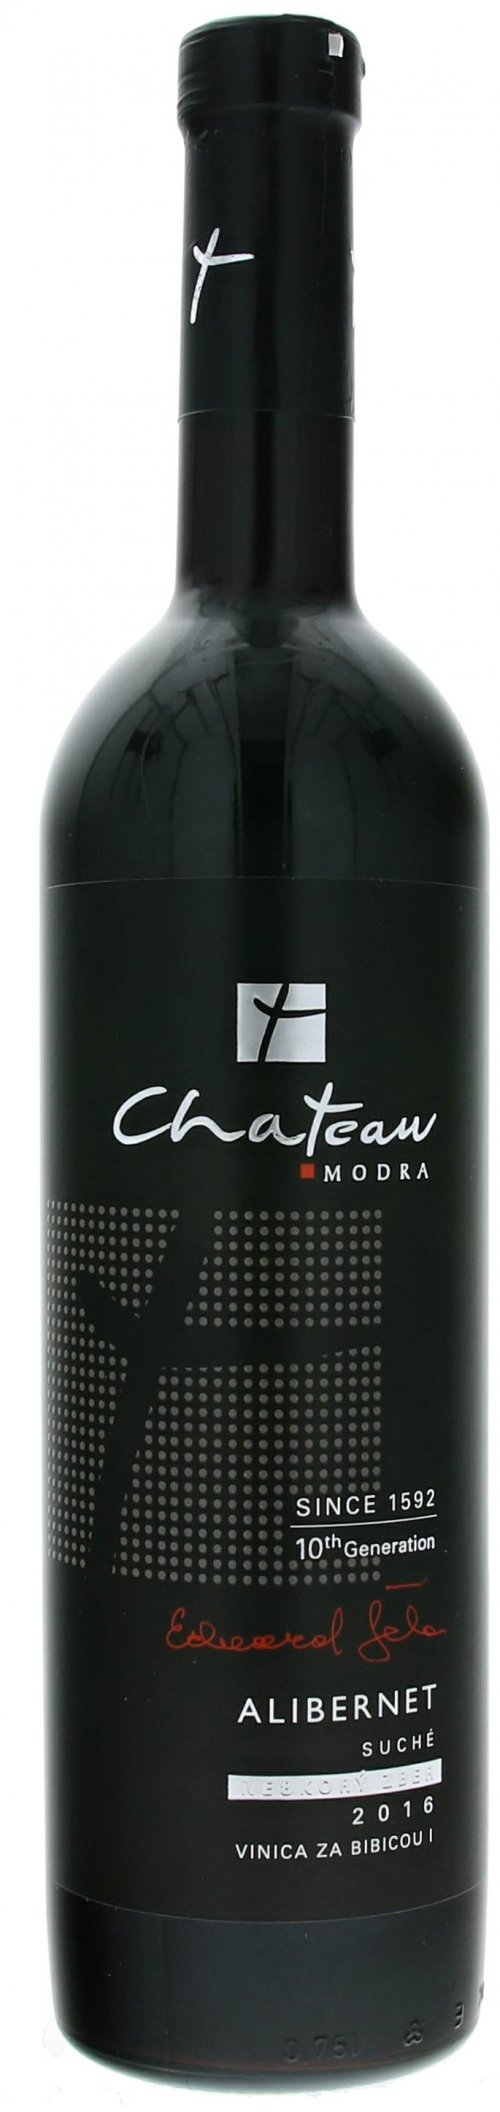 Château Modra 10th Generation Alibernet 0,75L, r2016, nz, cr, su